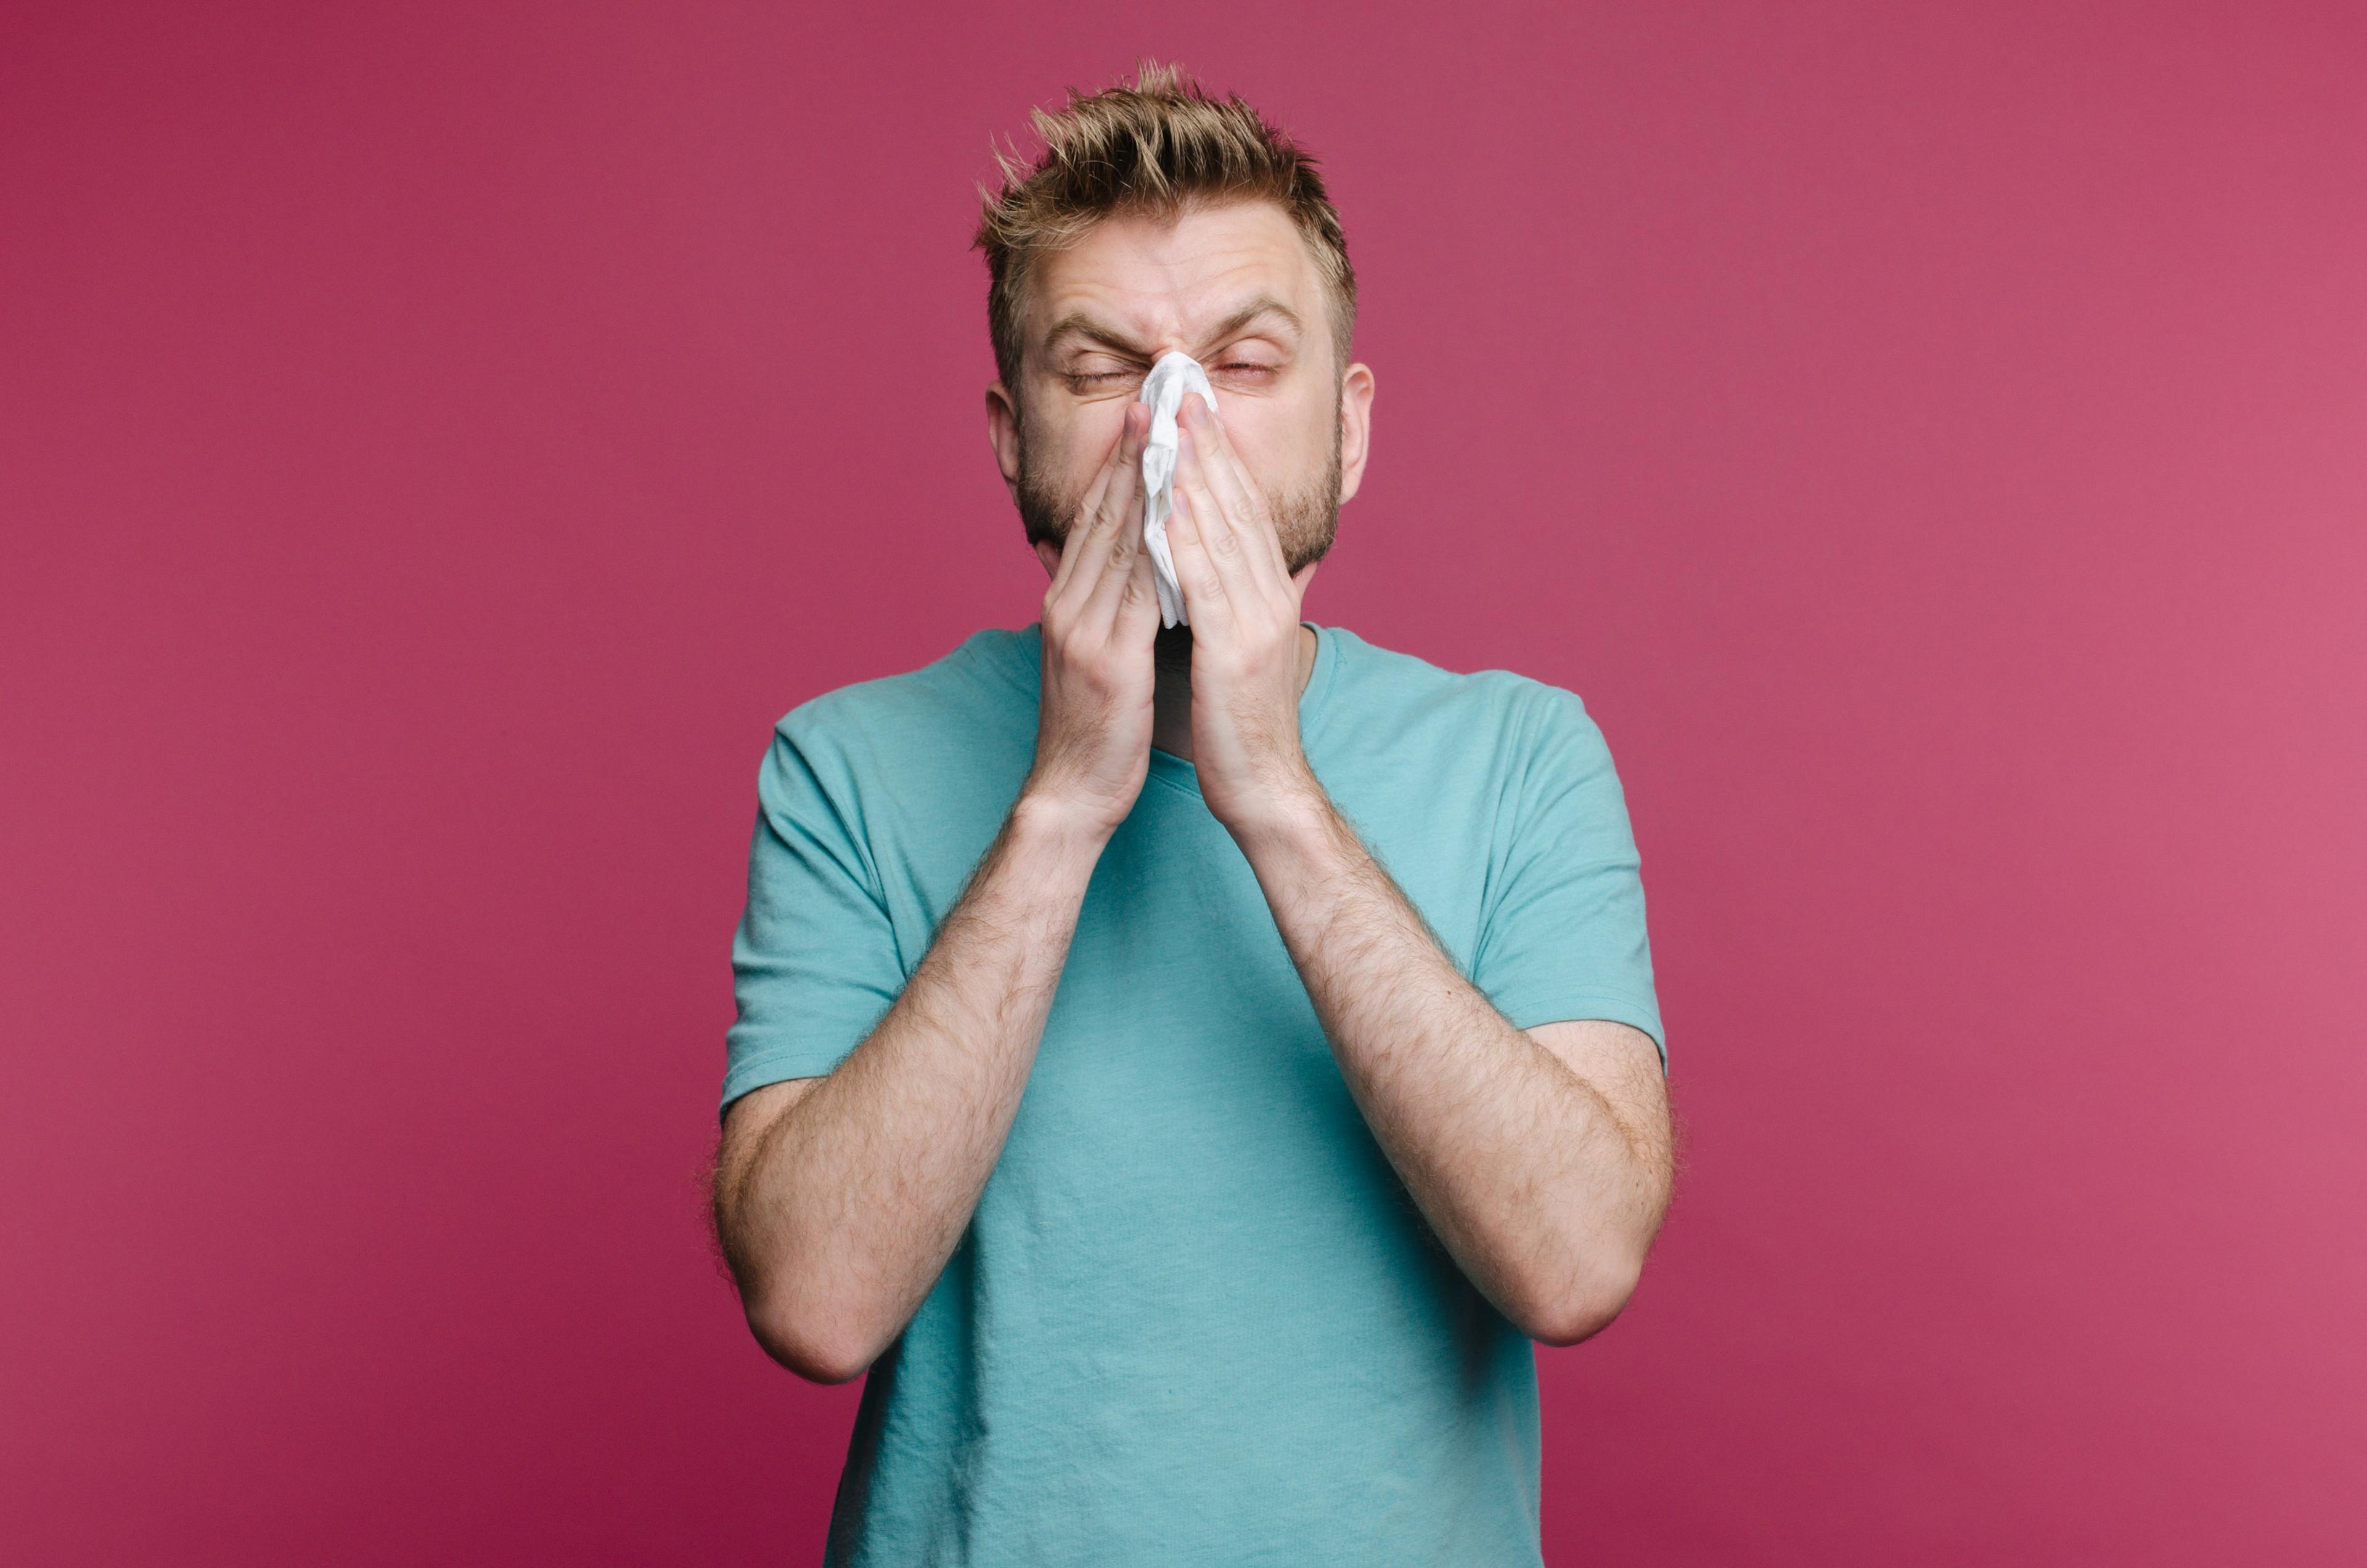 सर्दी किंवा स्वाइन फ्लूची सामान्य लक्षणे? या दशक-जुन्या महामारीबद्दल जाणून घ्या